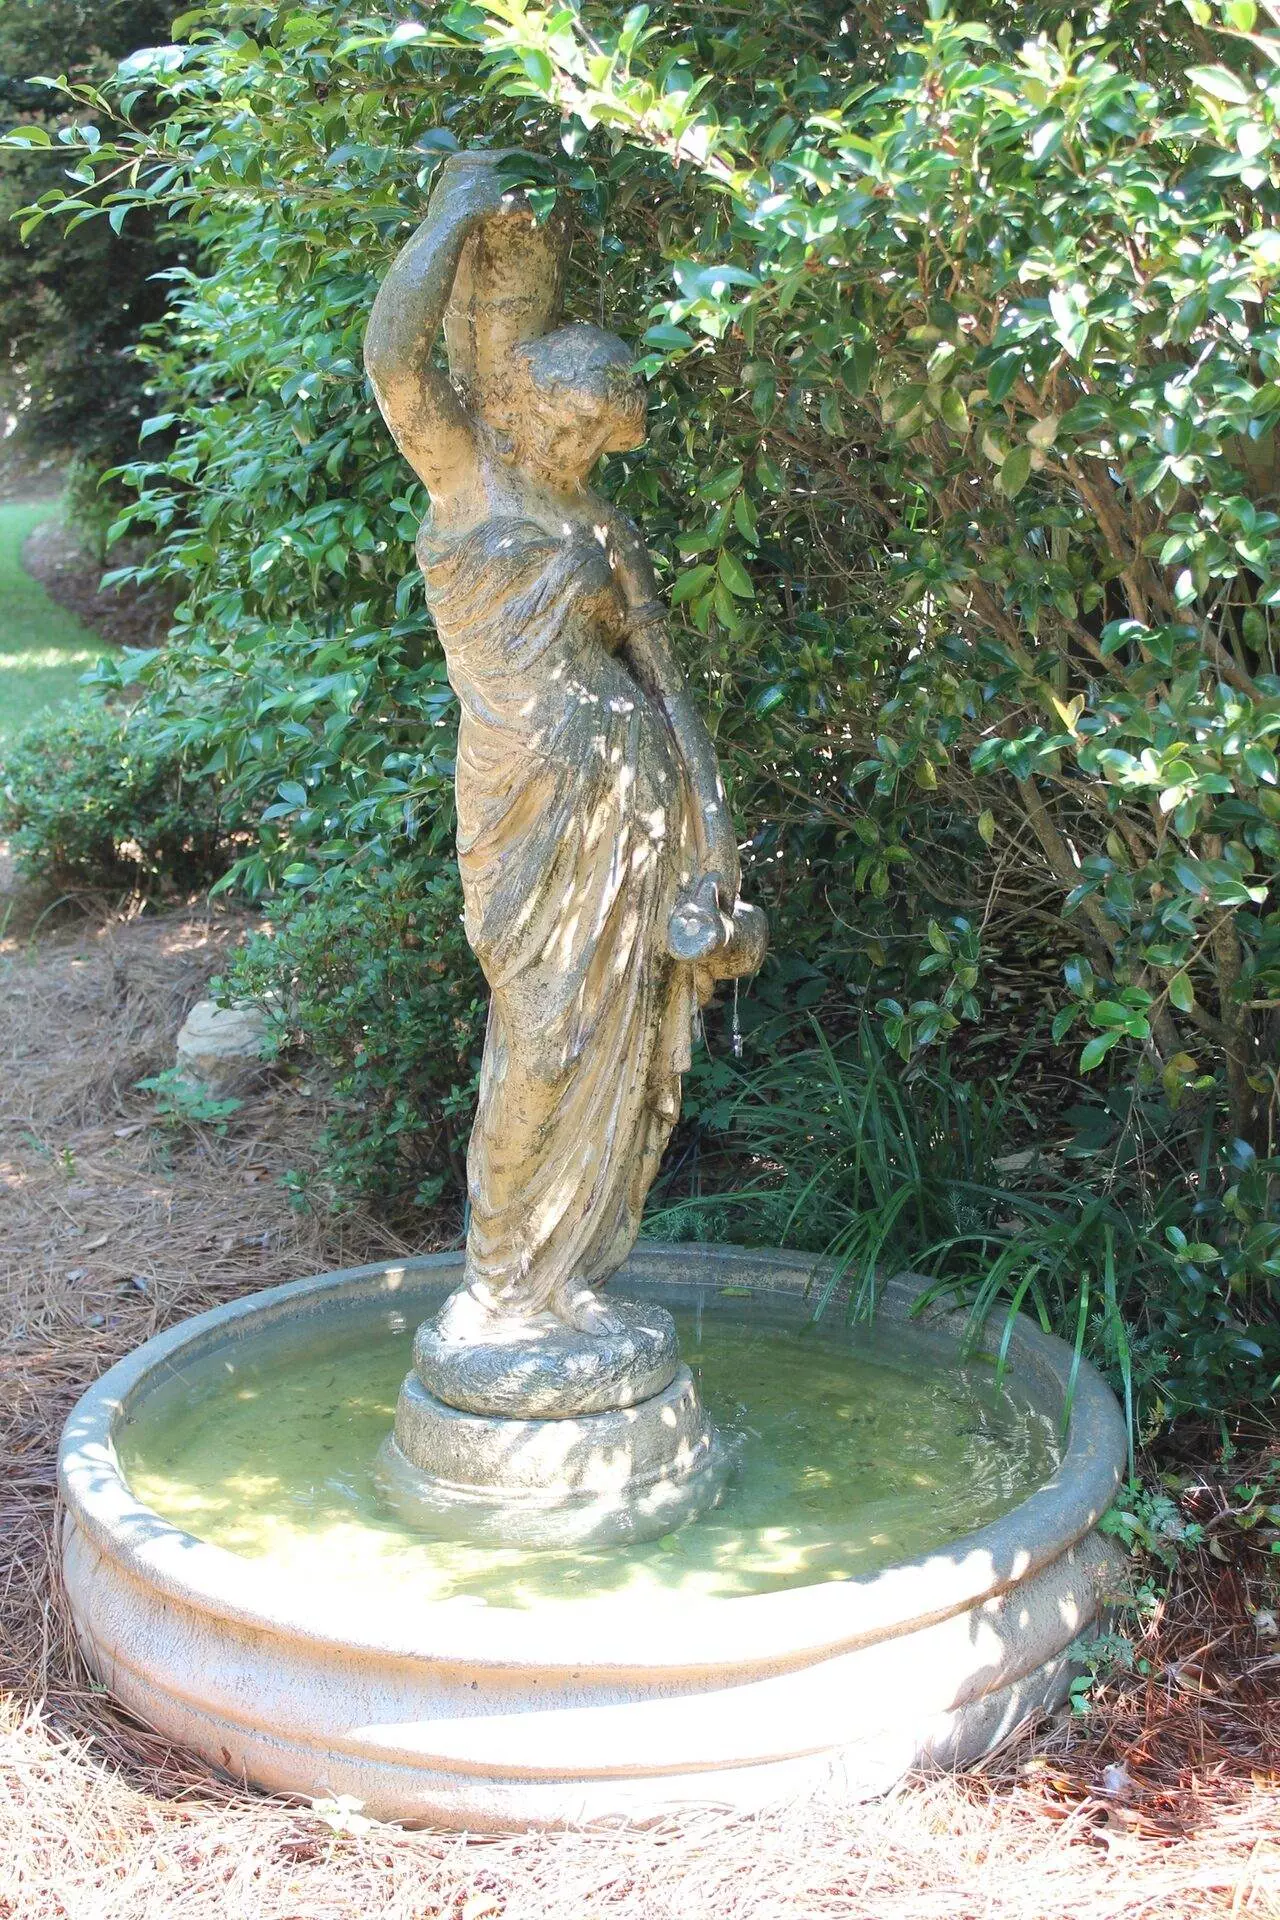 The Hall Wedding Garden fountain statue